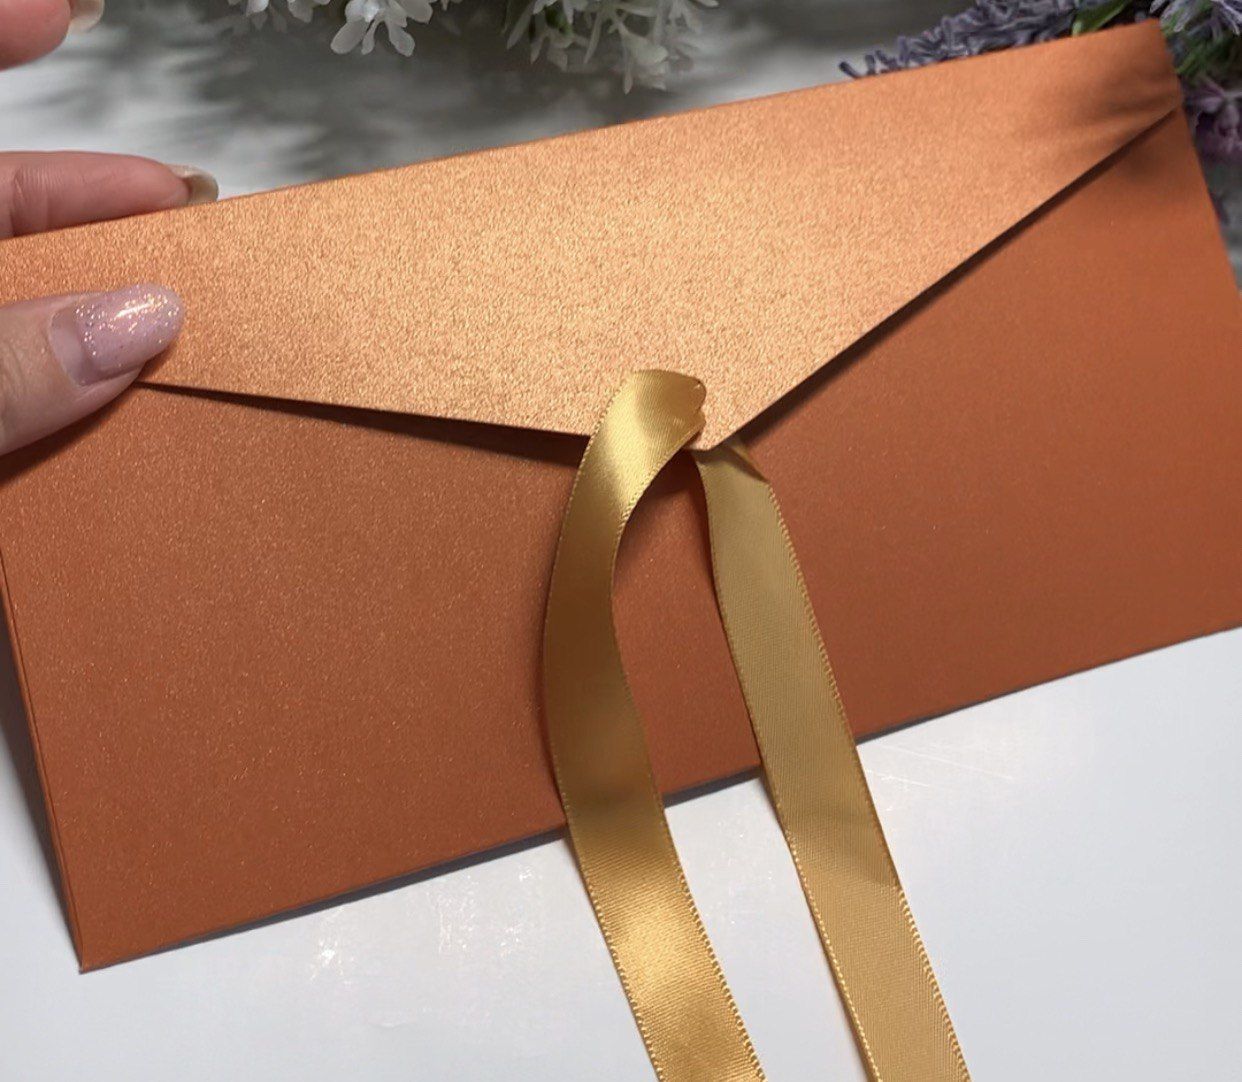 Пакетик для подарка. Как сделать конверт для подарка из бумаги.